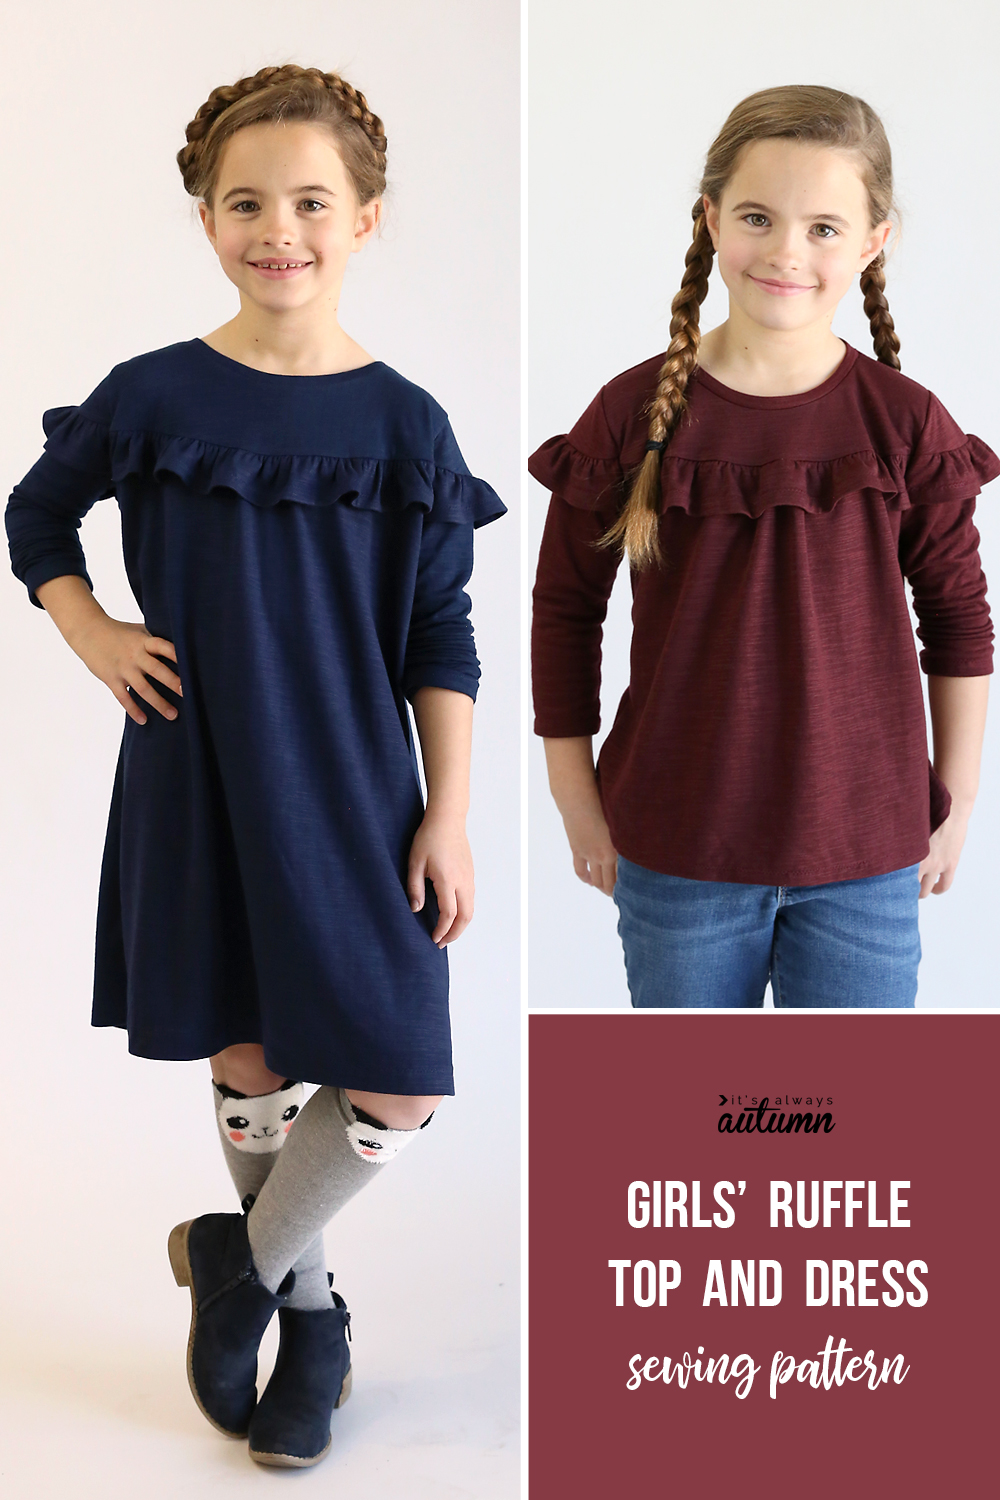 Girl wearing a ruffled dress; girl wearing a ruffled shirt